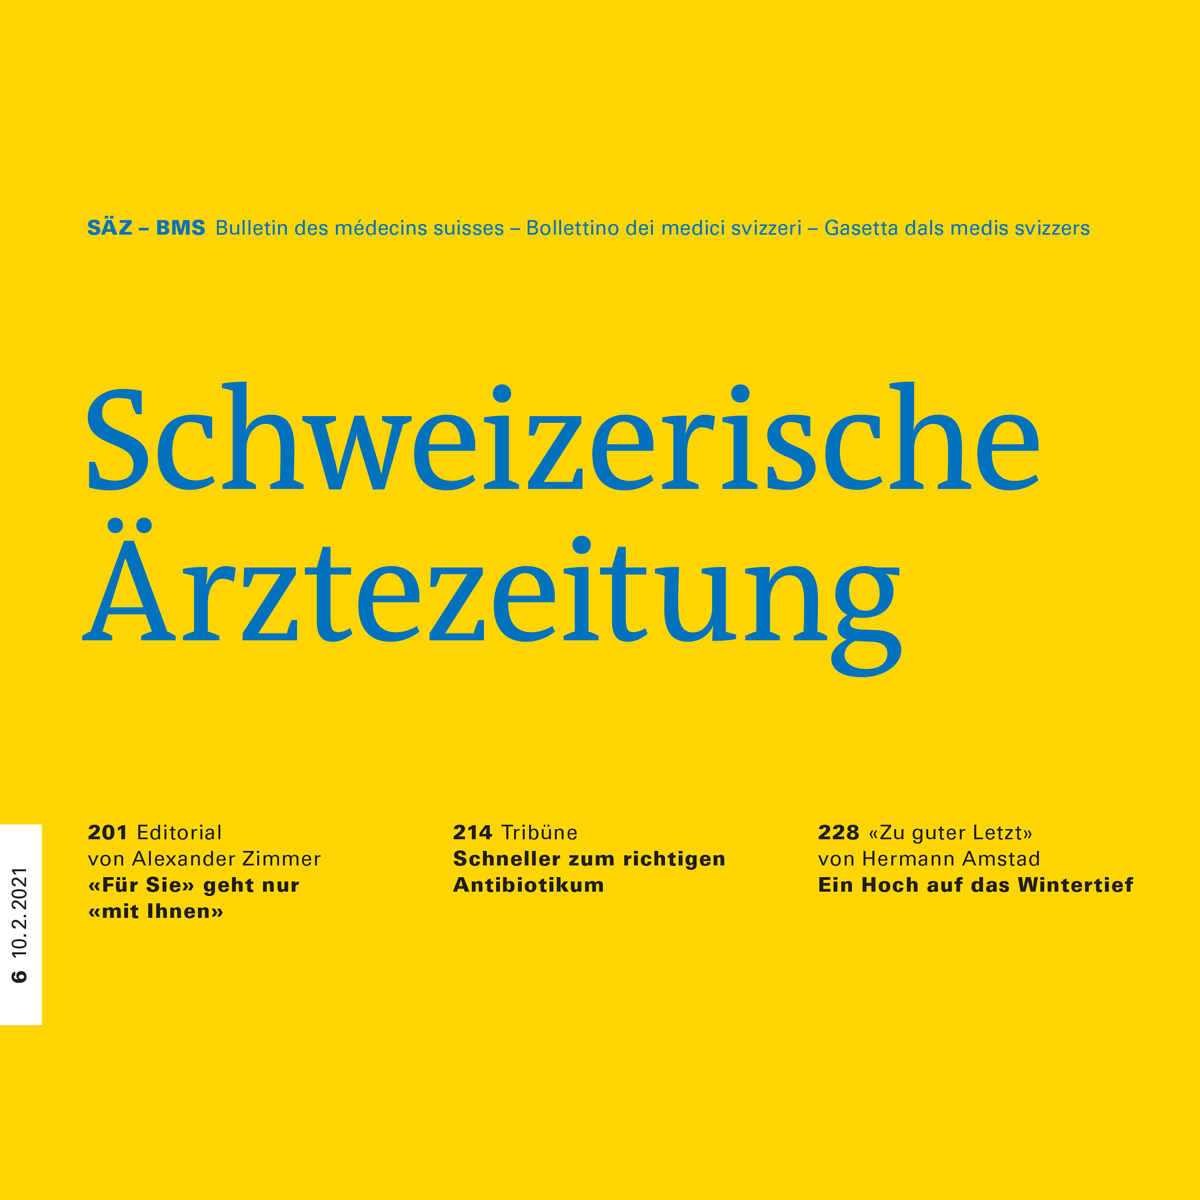 Faster to the right antibiotic treatment - Resistell in Schweizerische Ärztezeitung